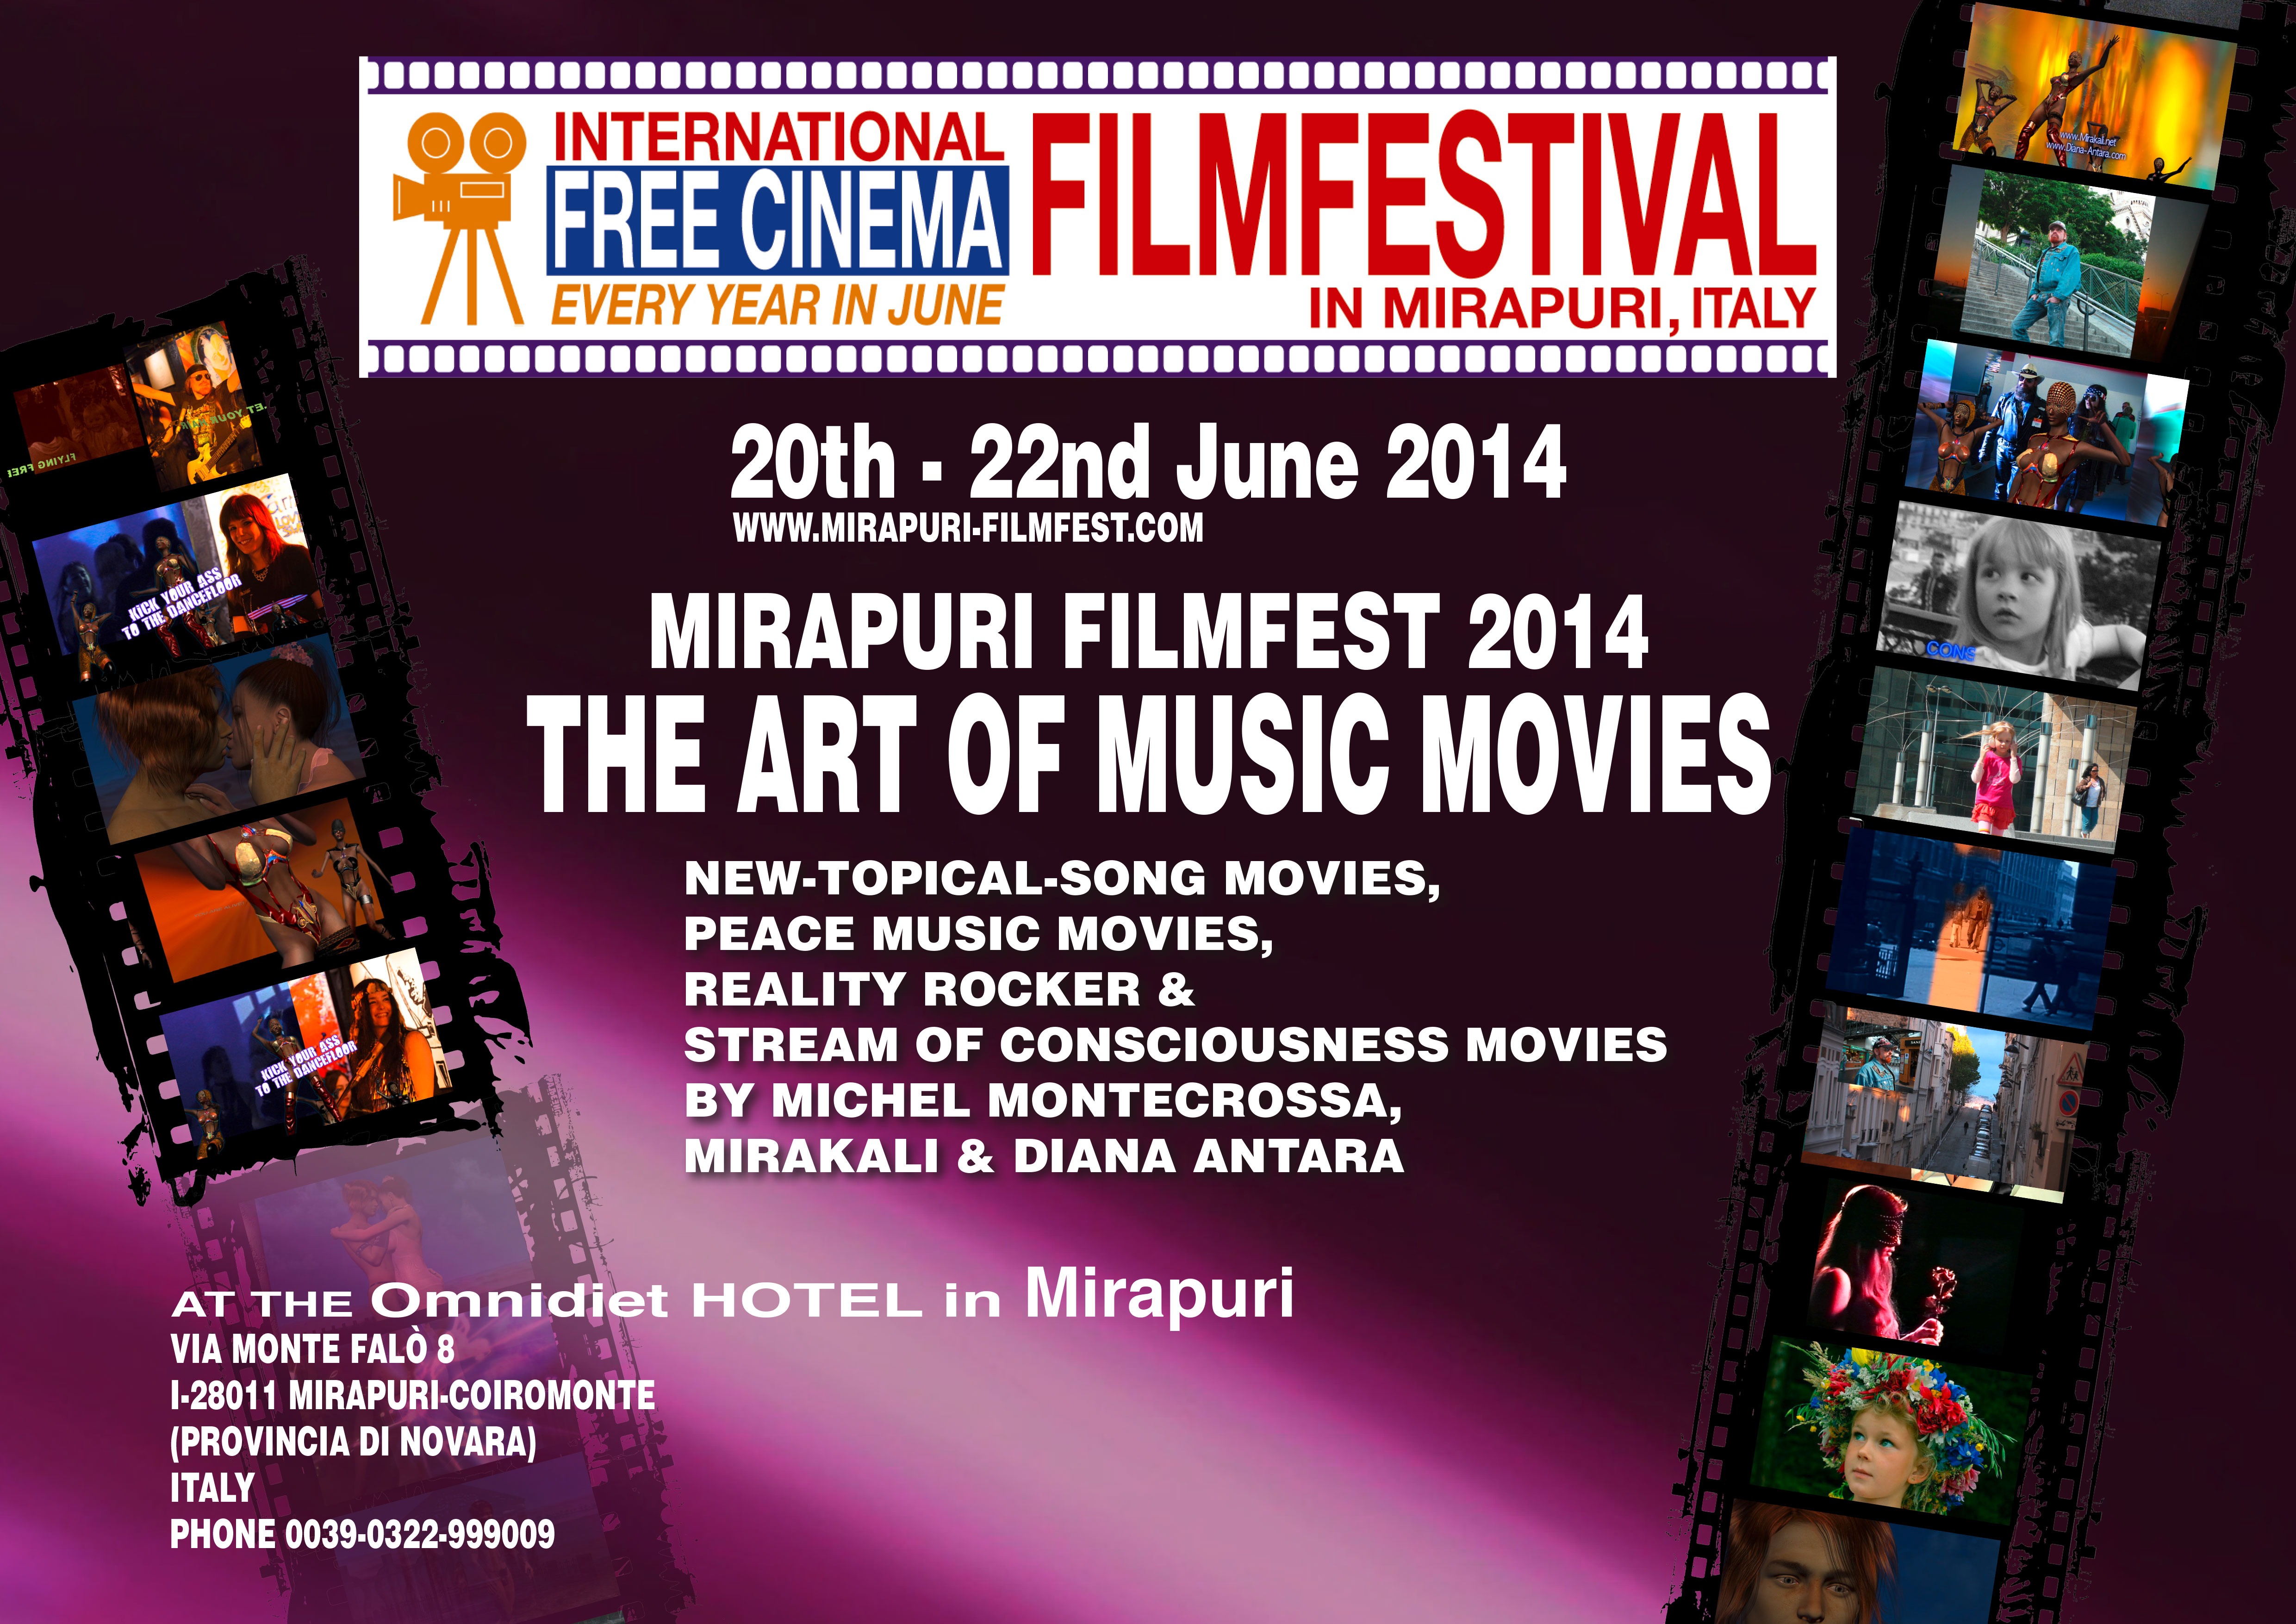 Free Cinema Filmfestival in Mirapuri